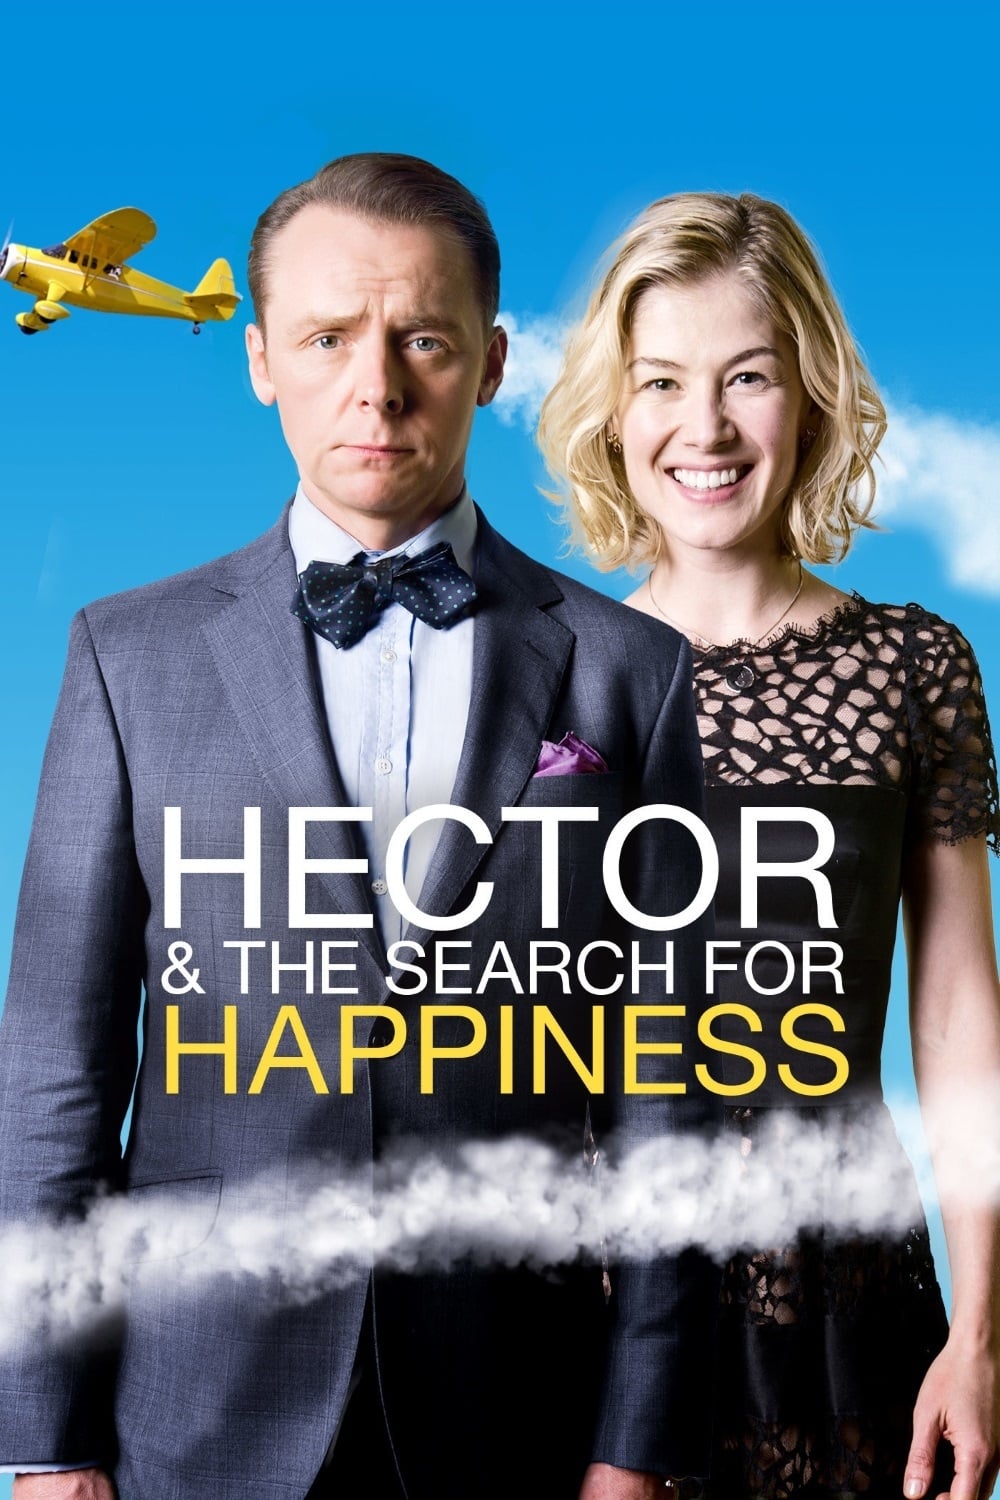 Héctor y el secreto de la felicidad (2014)